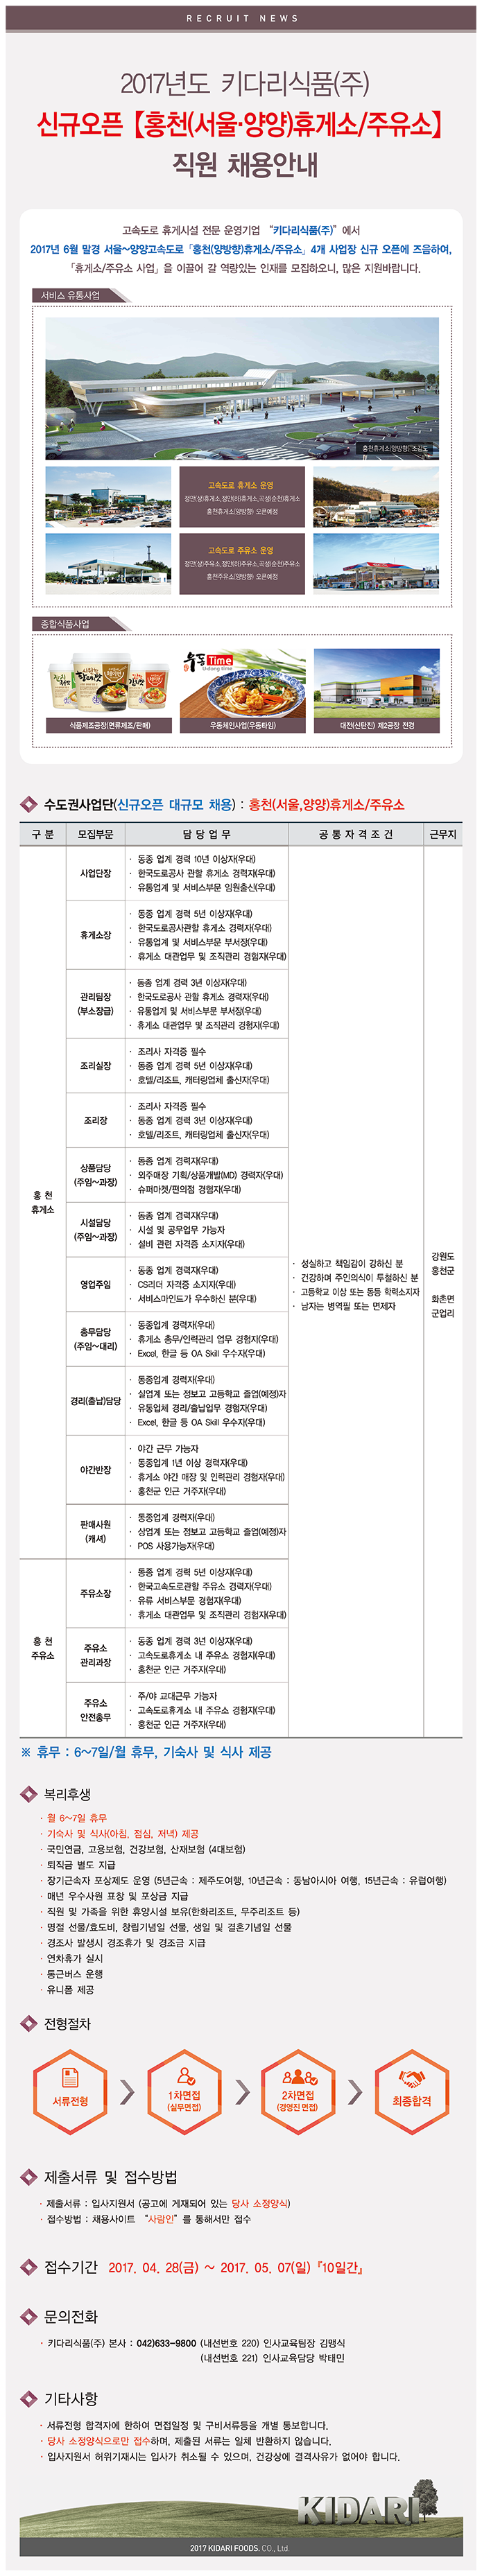 2017년도 신규오픈 [홍천(서울・양양)휴게소/주요소] 직원 채용